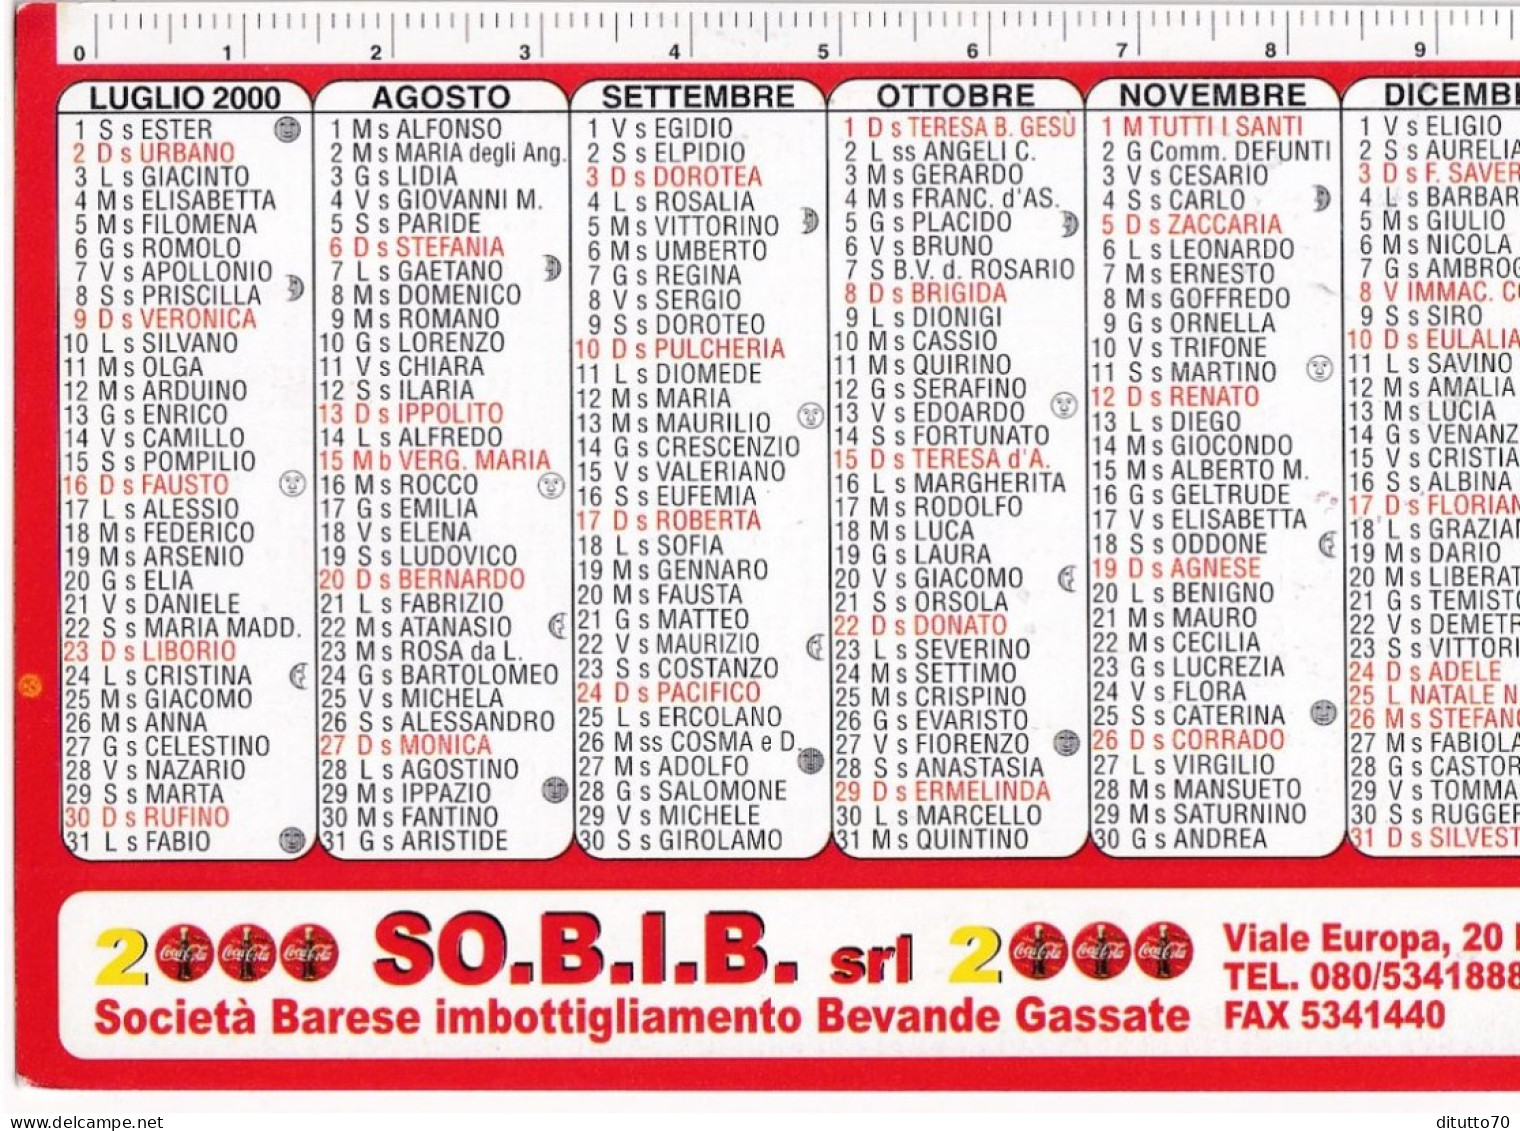 Calendarietto - SO.B.I.B. - Coca Cola - Bari - Anno 2000 - Formato Piccolo : 1991-00